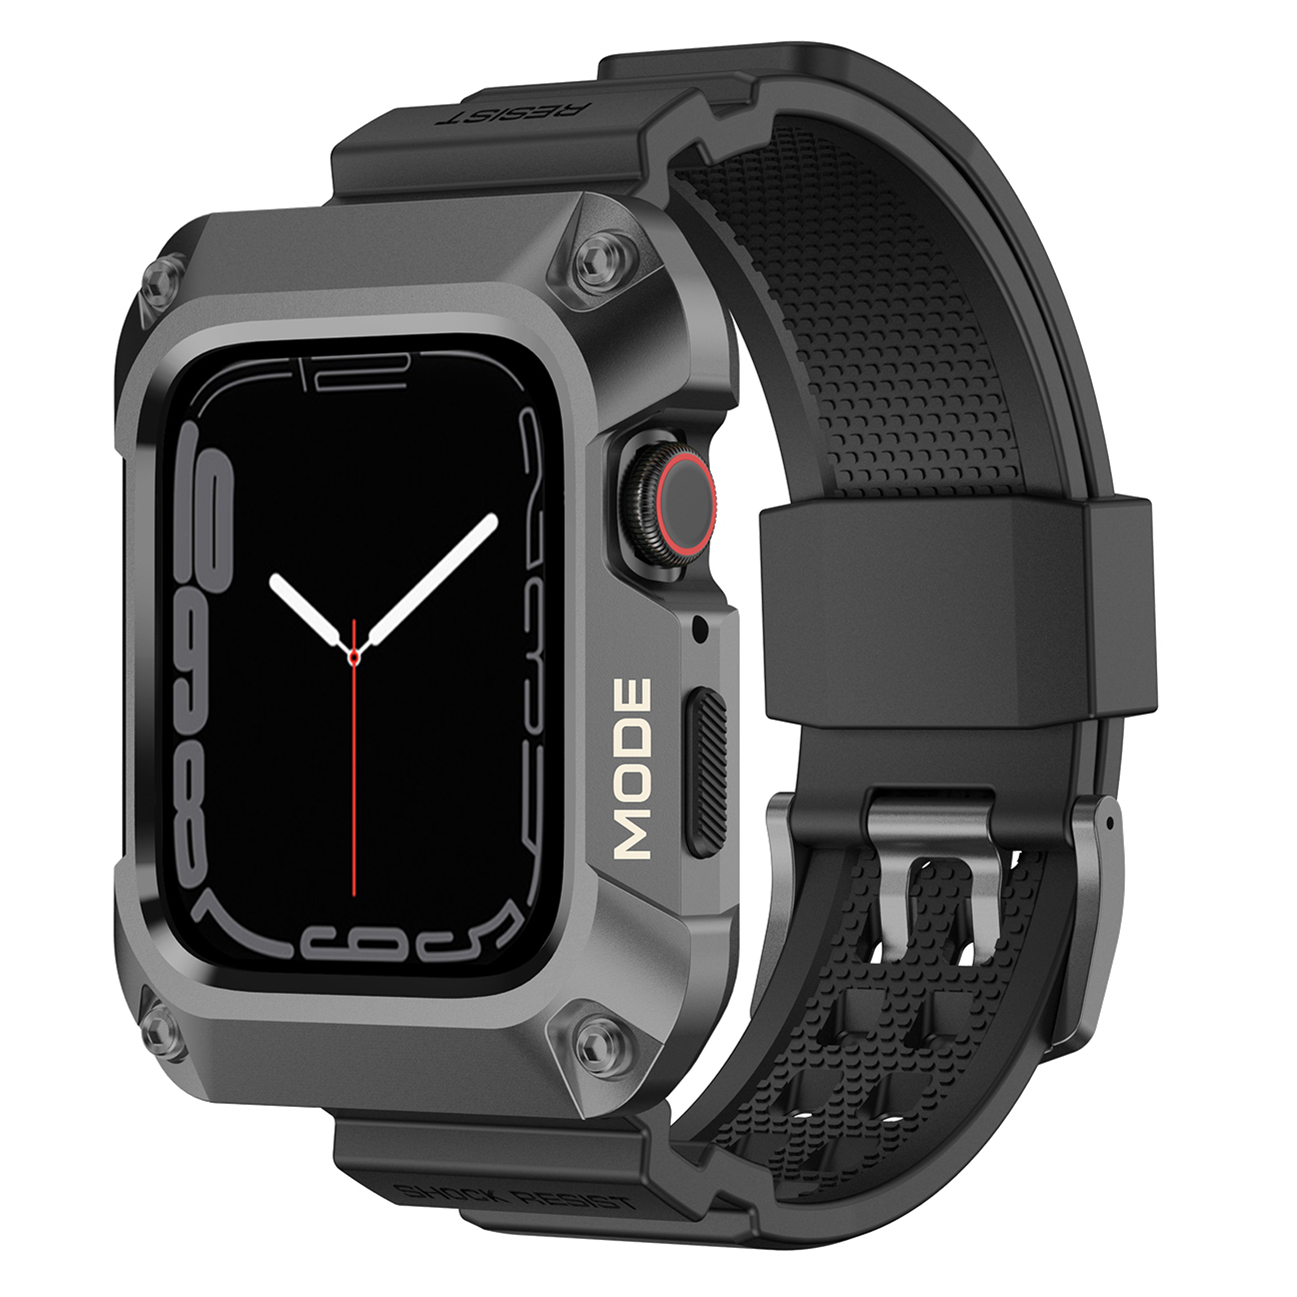 Ốp Case Vỏ Kim Loại bảo vệ tích hợp dây đeo cho Apple Watch Series 456SE789SE2 Size 44mm45mm - Hàng Chính Hãng - Xám